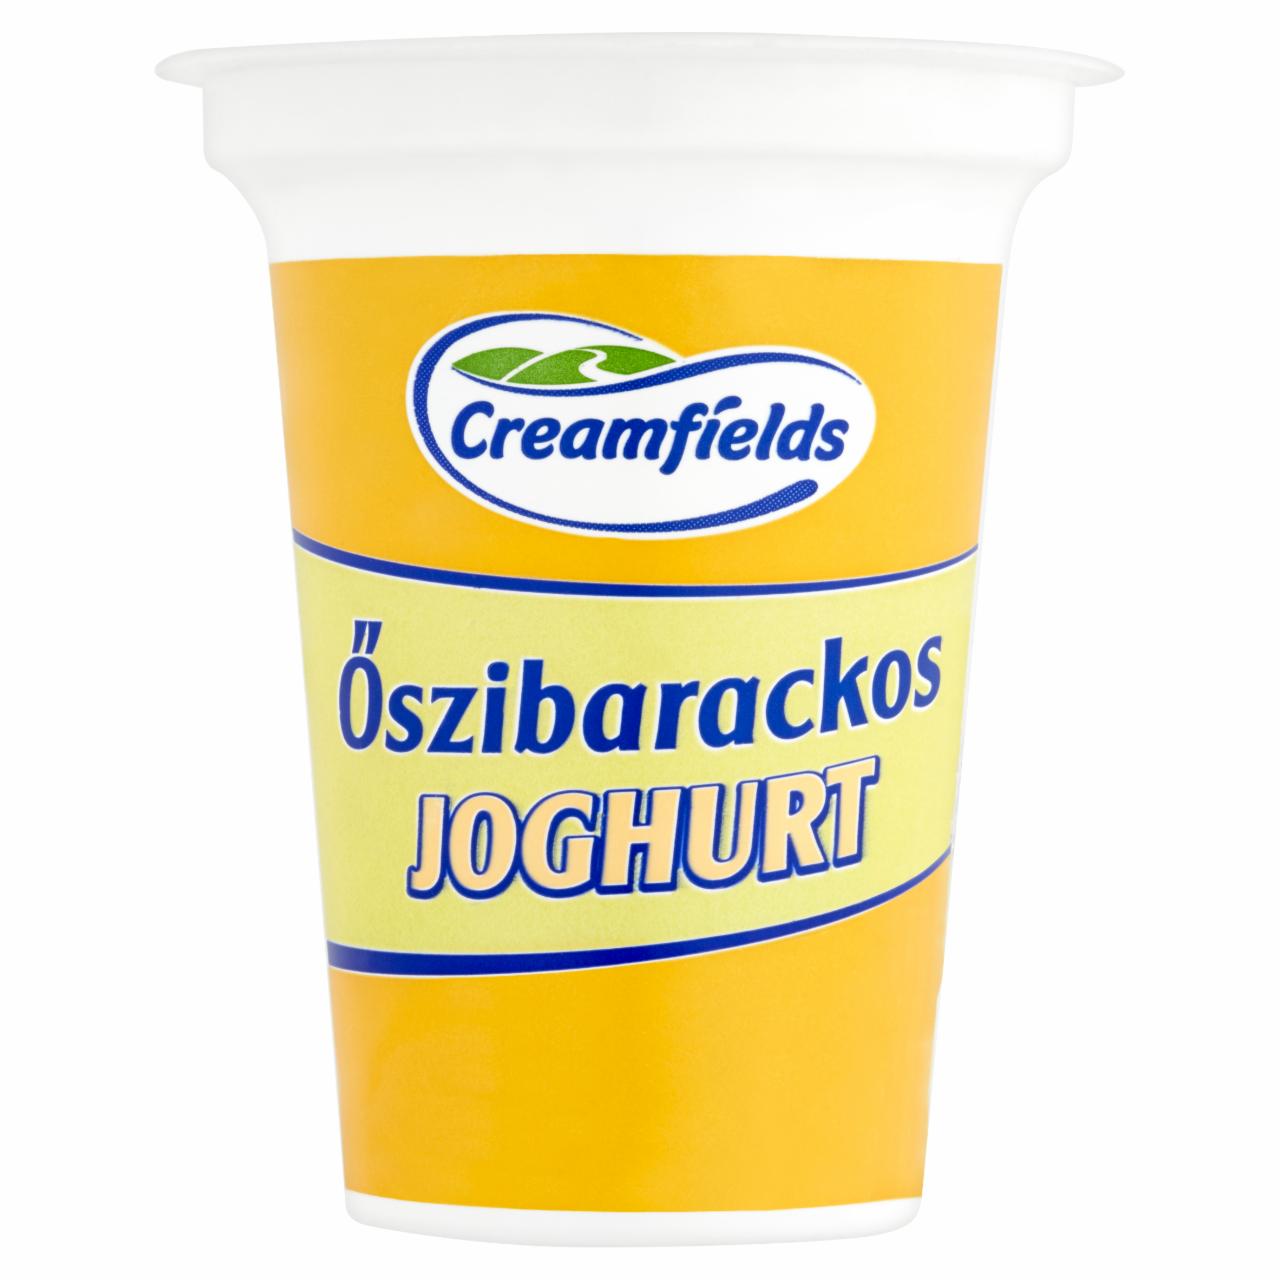 Képek - Creamfields őszibarackos joghurt 140 g